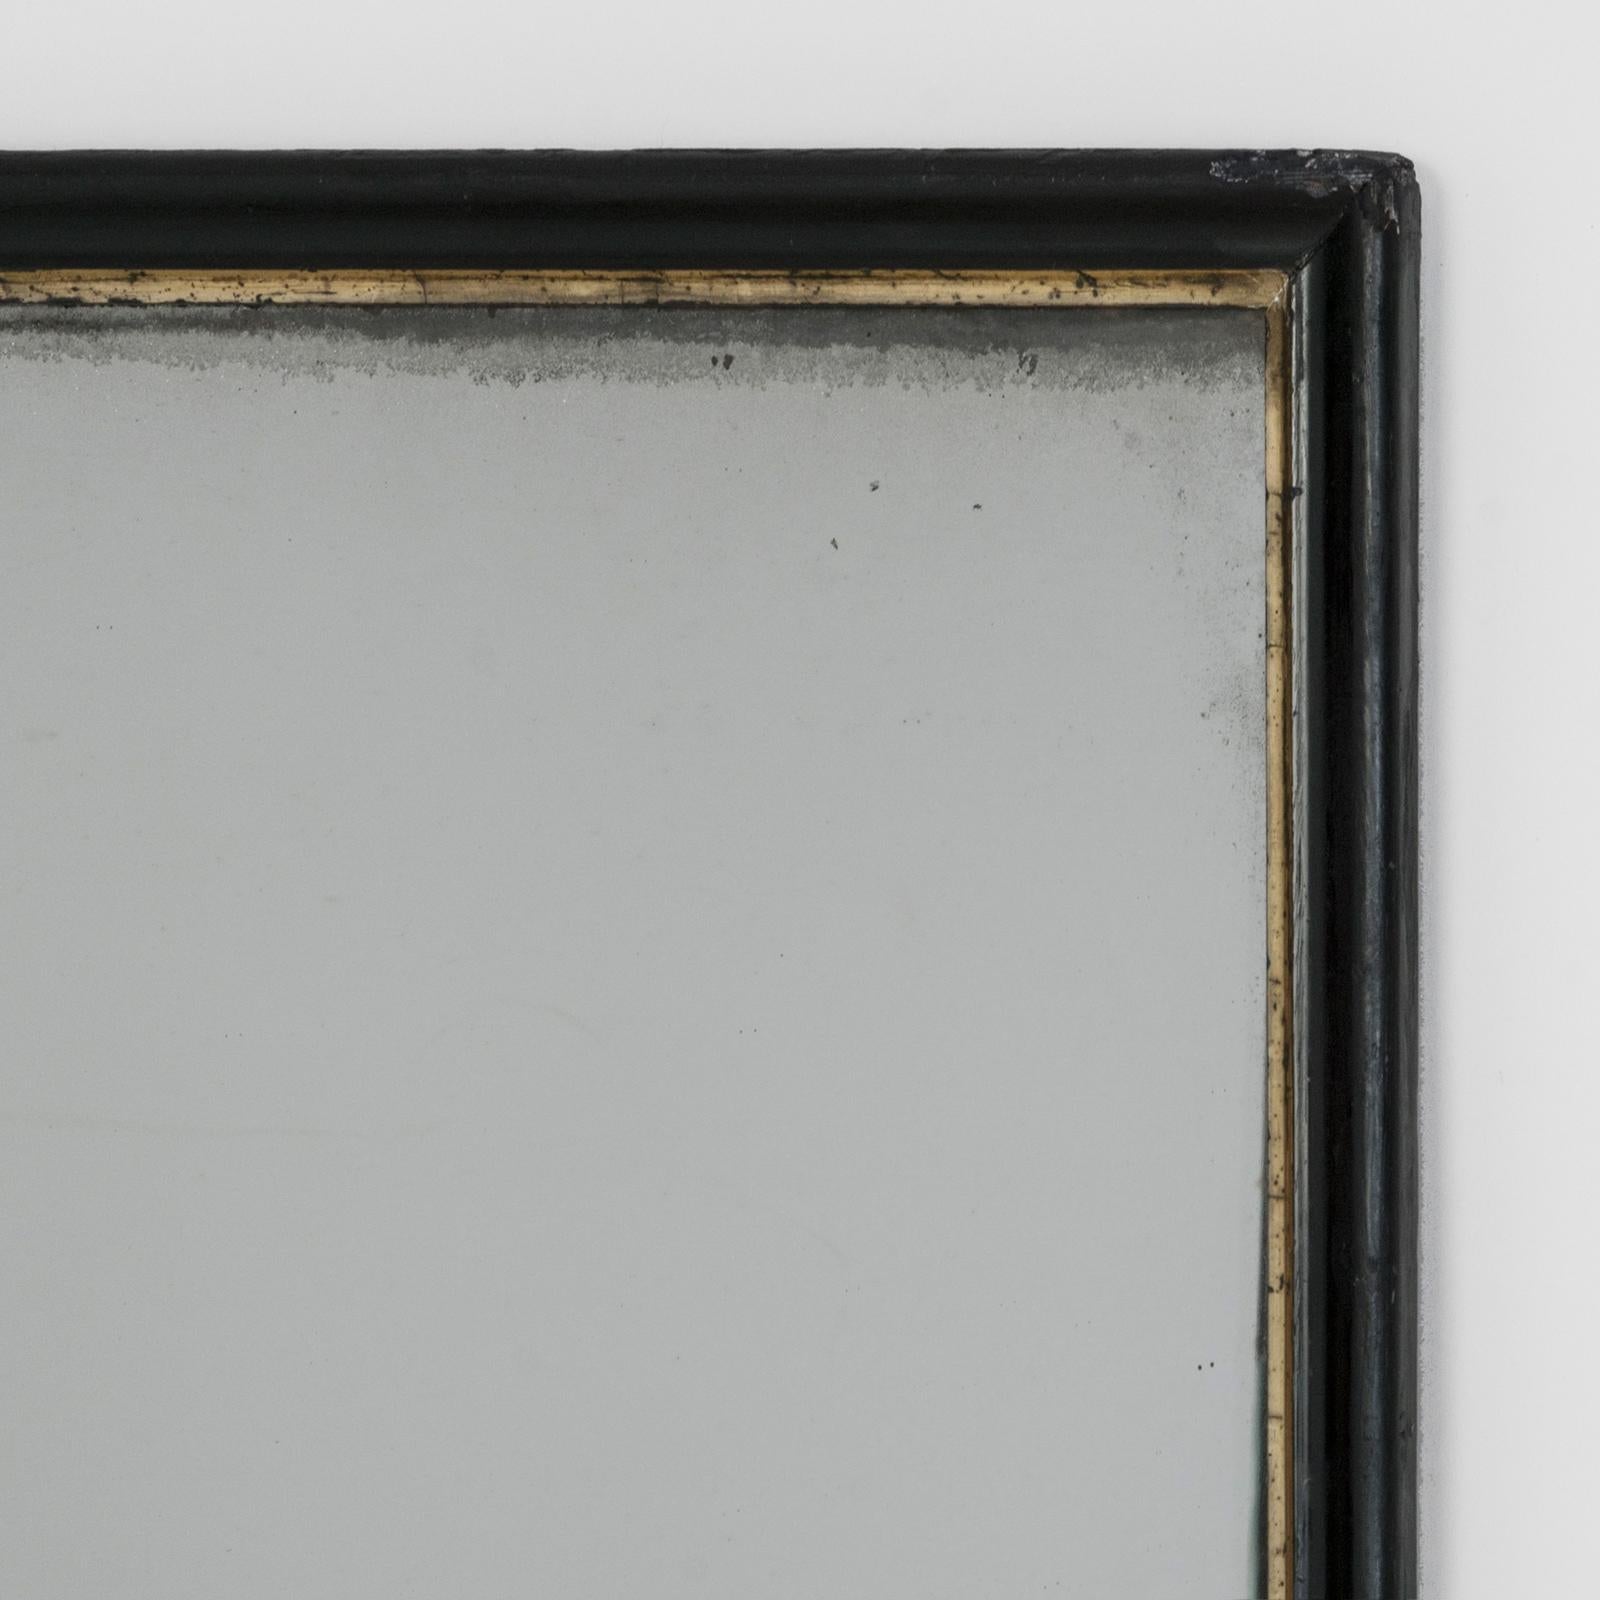 Wir präsentieren einen majestätischen, rechteckigen französischen Spiegel im Stil von Napoleon III. aus der Zeit um 1880-1890. Sein Rahmen verbindet elegant Schwarz- und Goldtöne mit Raffinesse und Anmut.

Die Entdeckung eines antiken Spiegels von